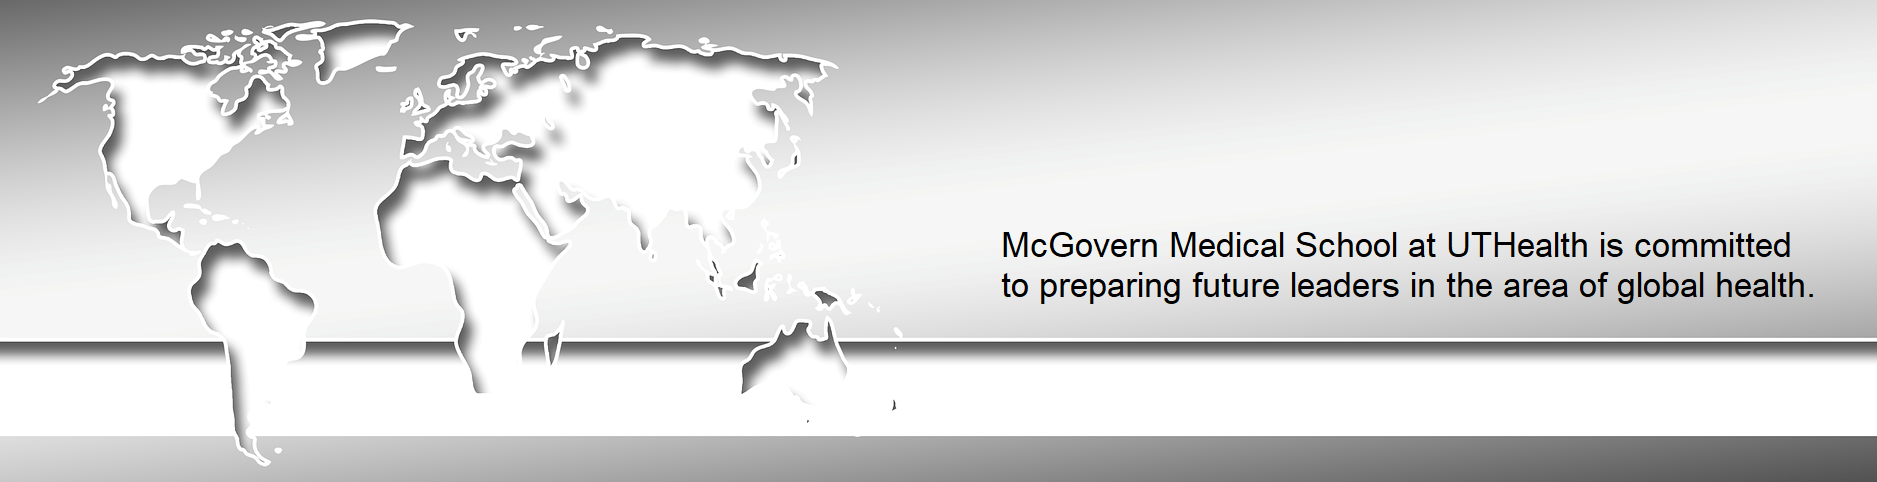 McGovern Med致力于为全球健康领域的未来领导者做好准备